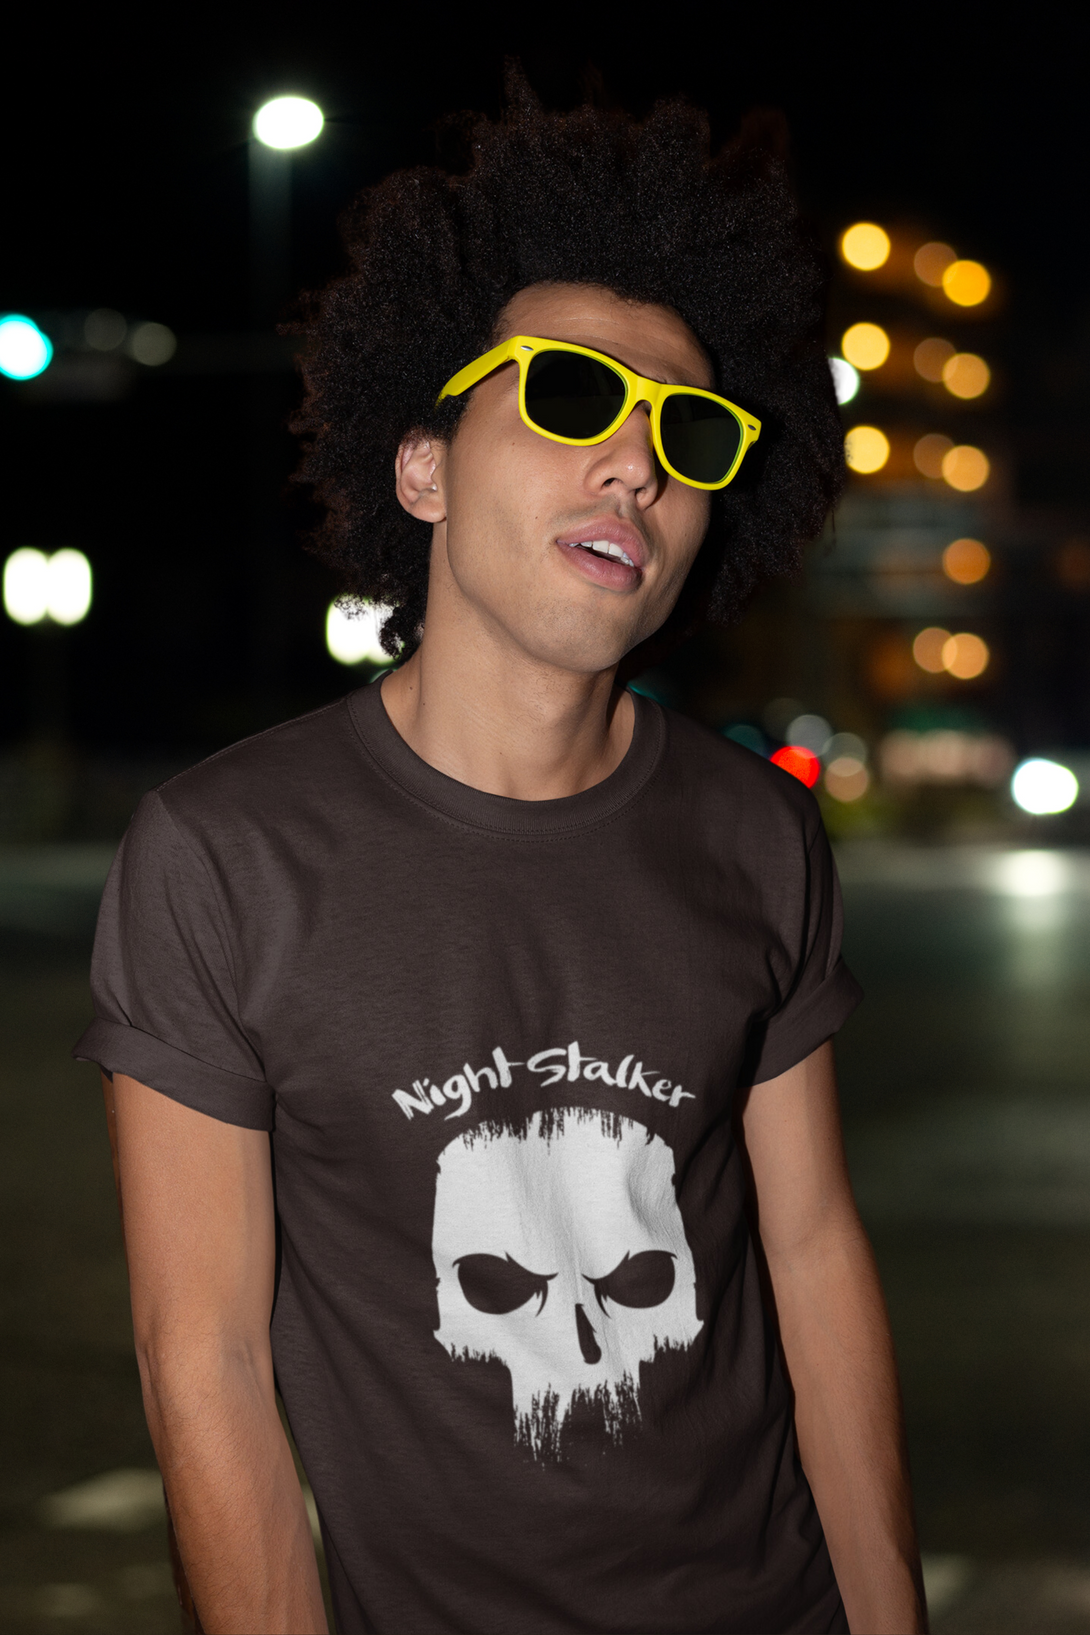 Skull Night Stalker Printed T Shirt For Men - WowWaves - 4